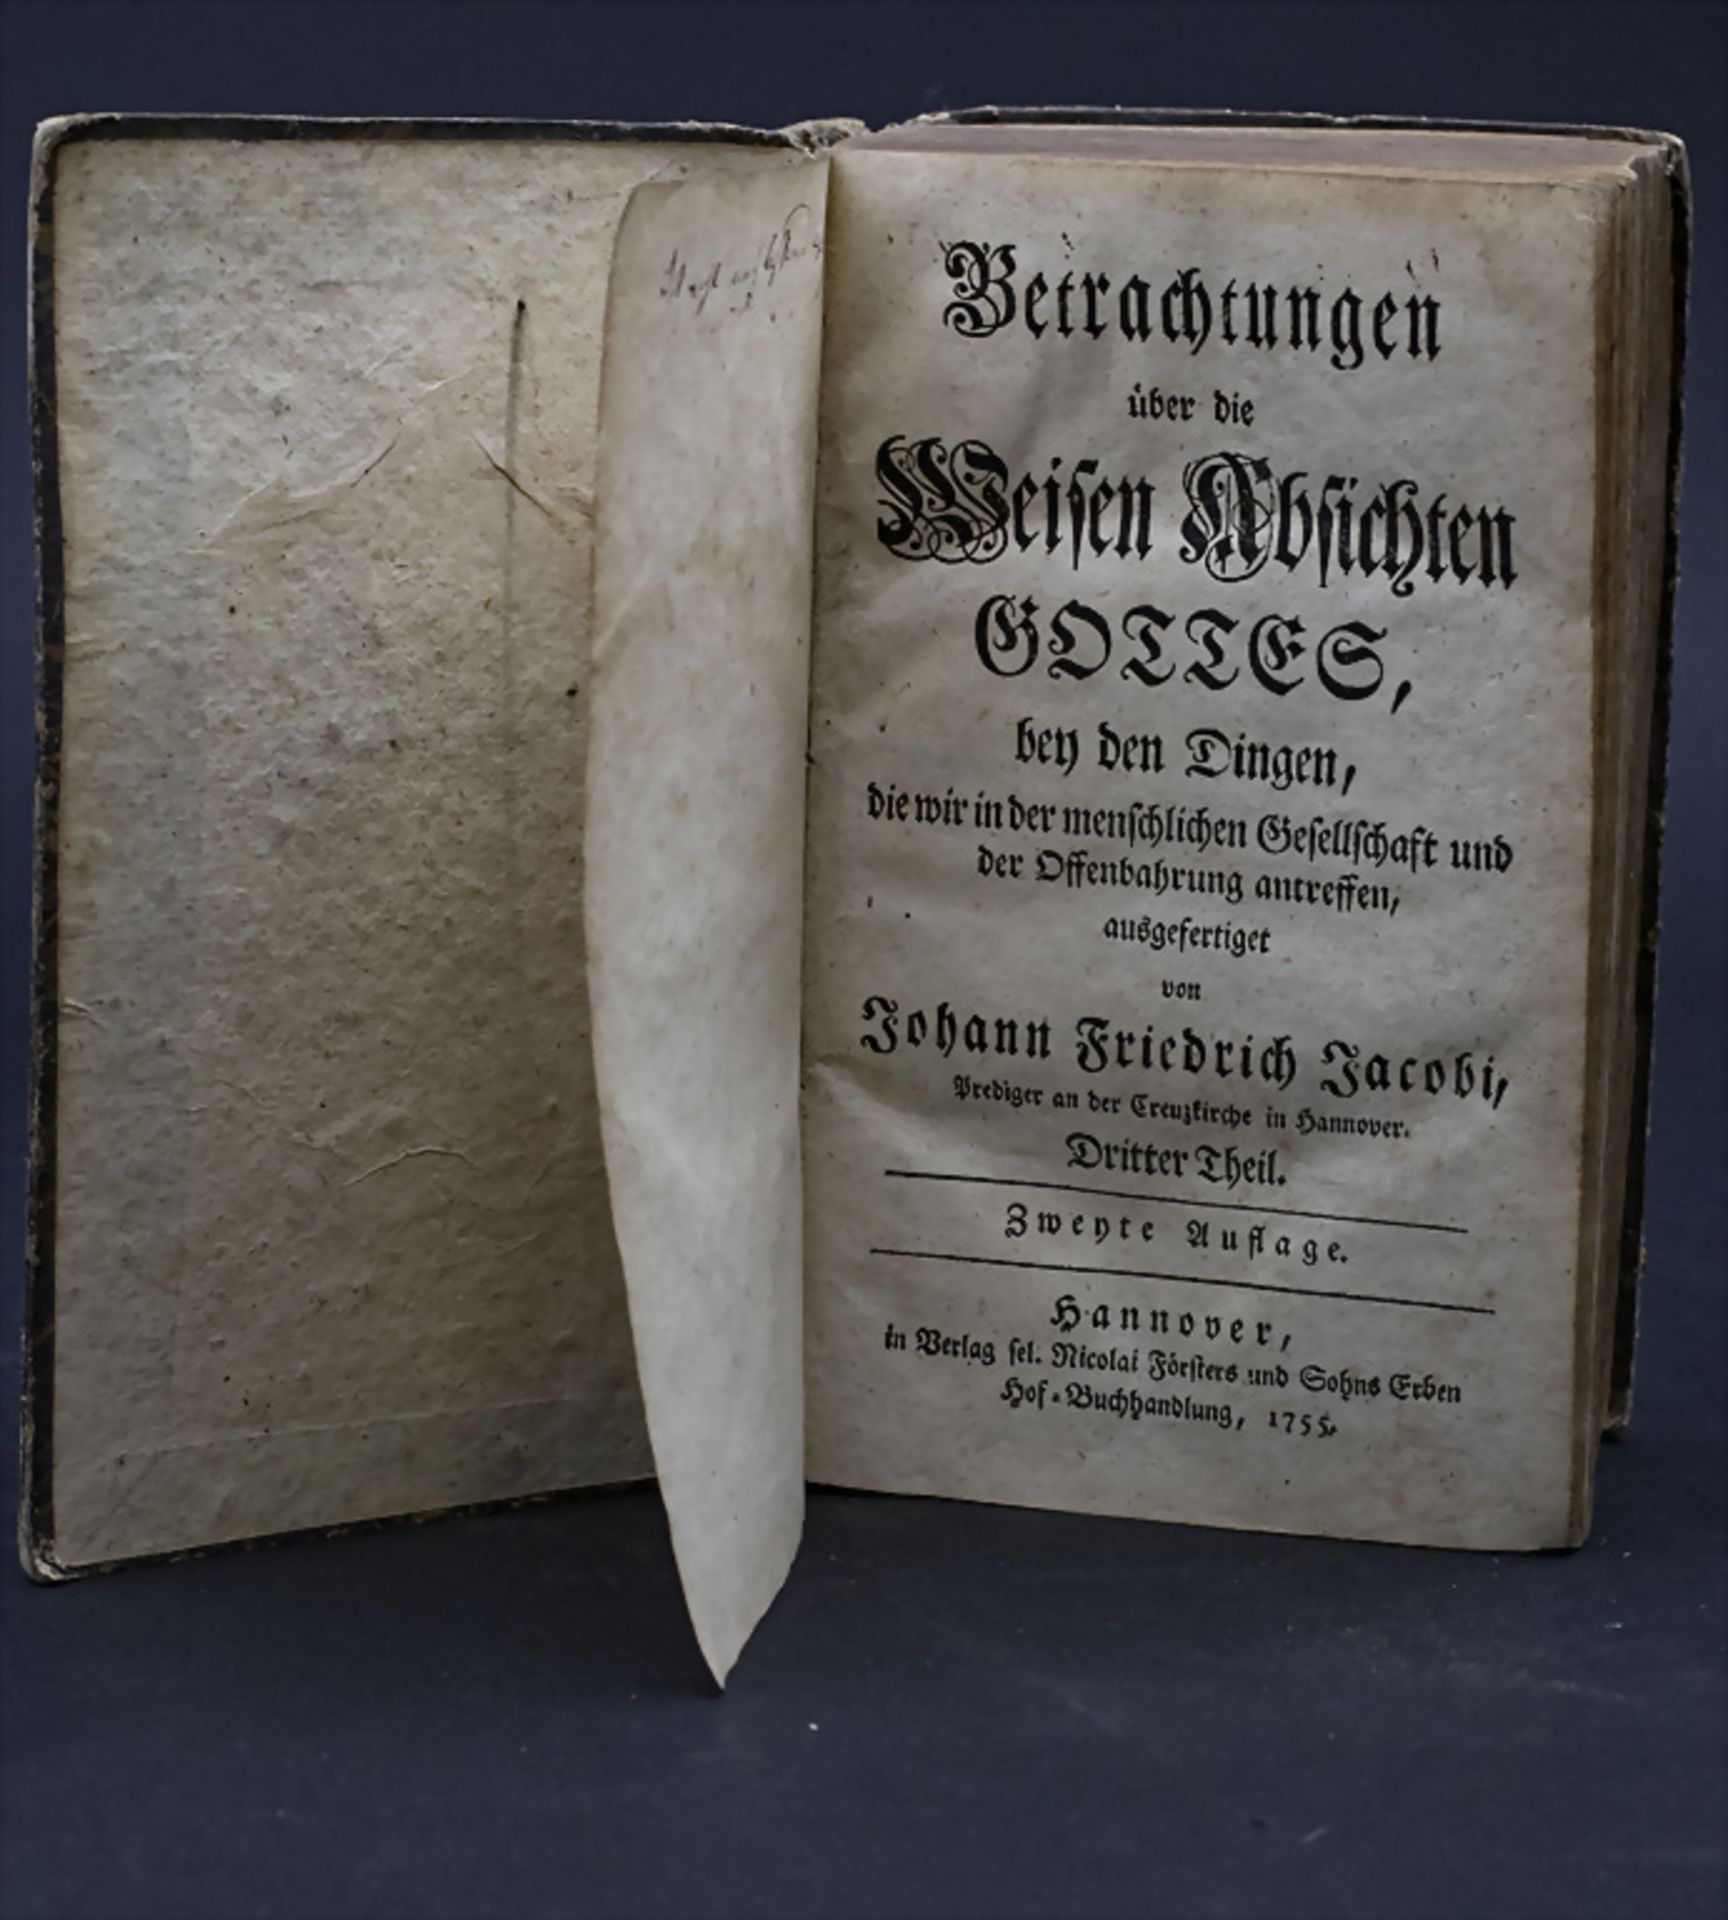 Johann Friedrich Jacobi, 'Betrachtungen über die Weisen Absichten Gottes', 1755 - Image 4 of 4